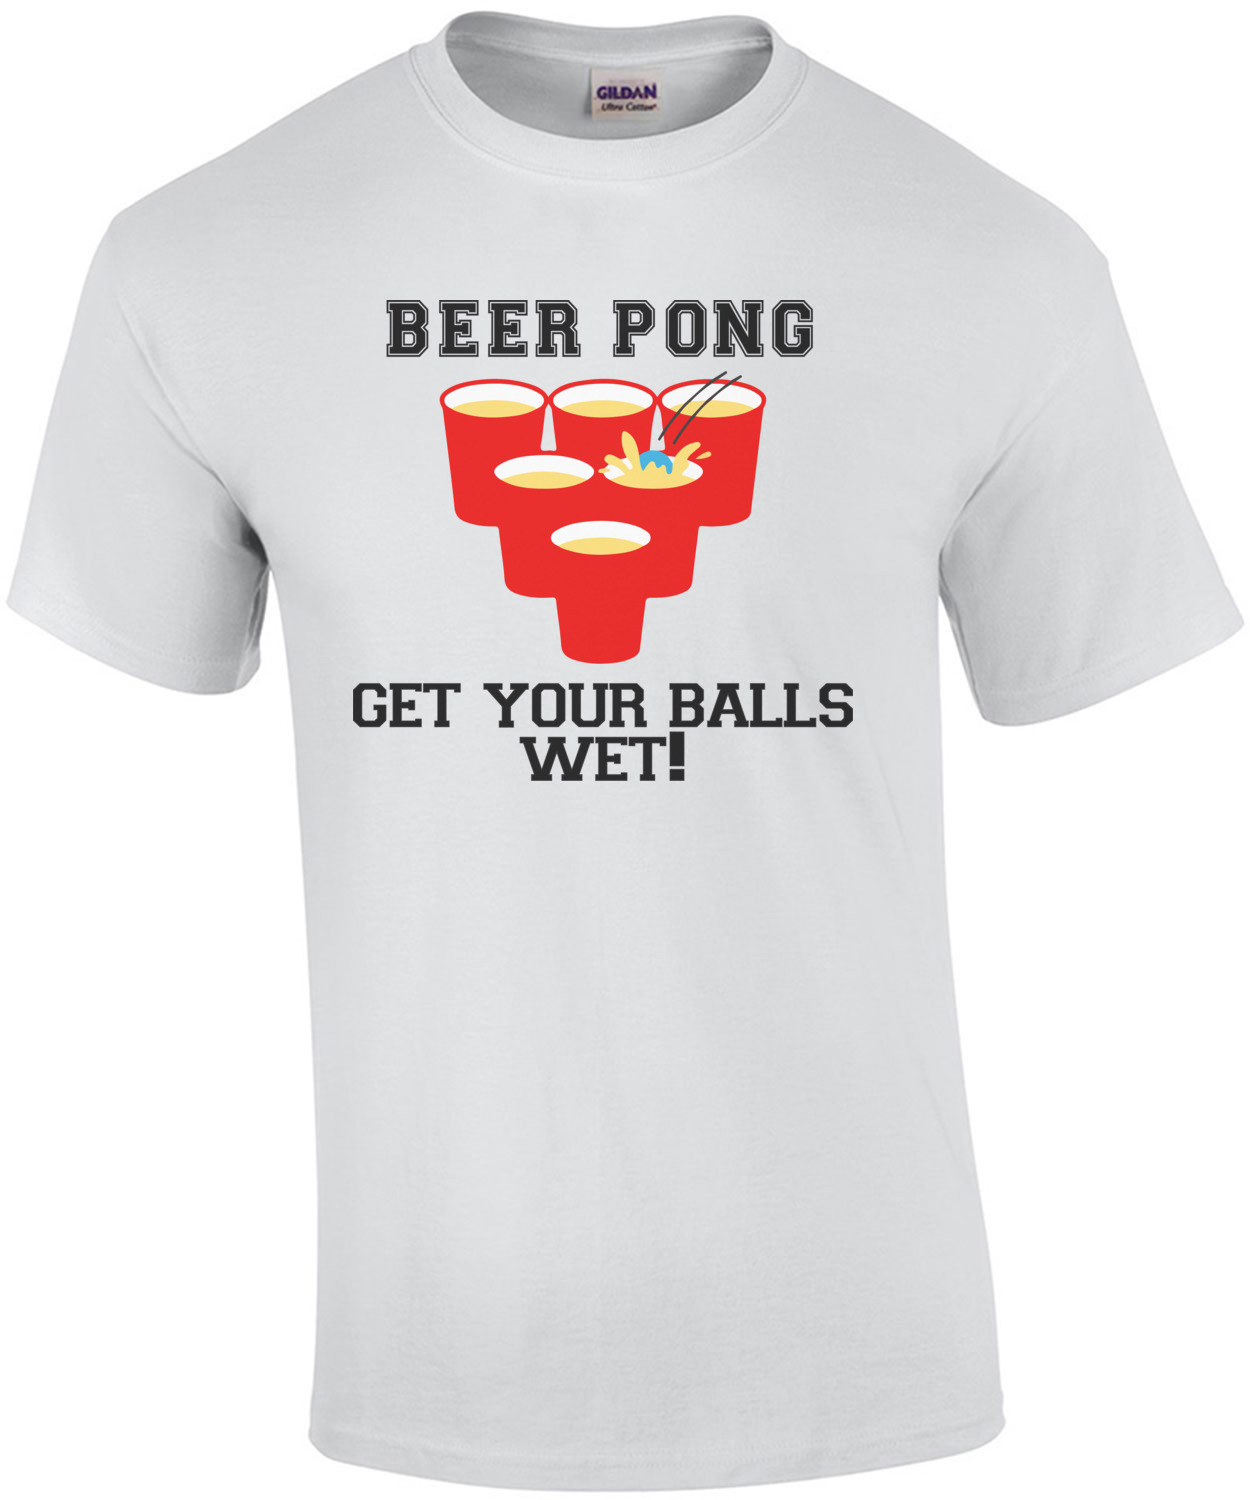 Beer Pong - Get your balls wet t-shirt